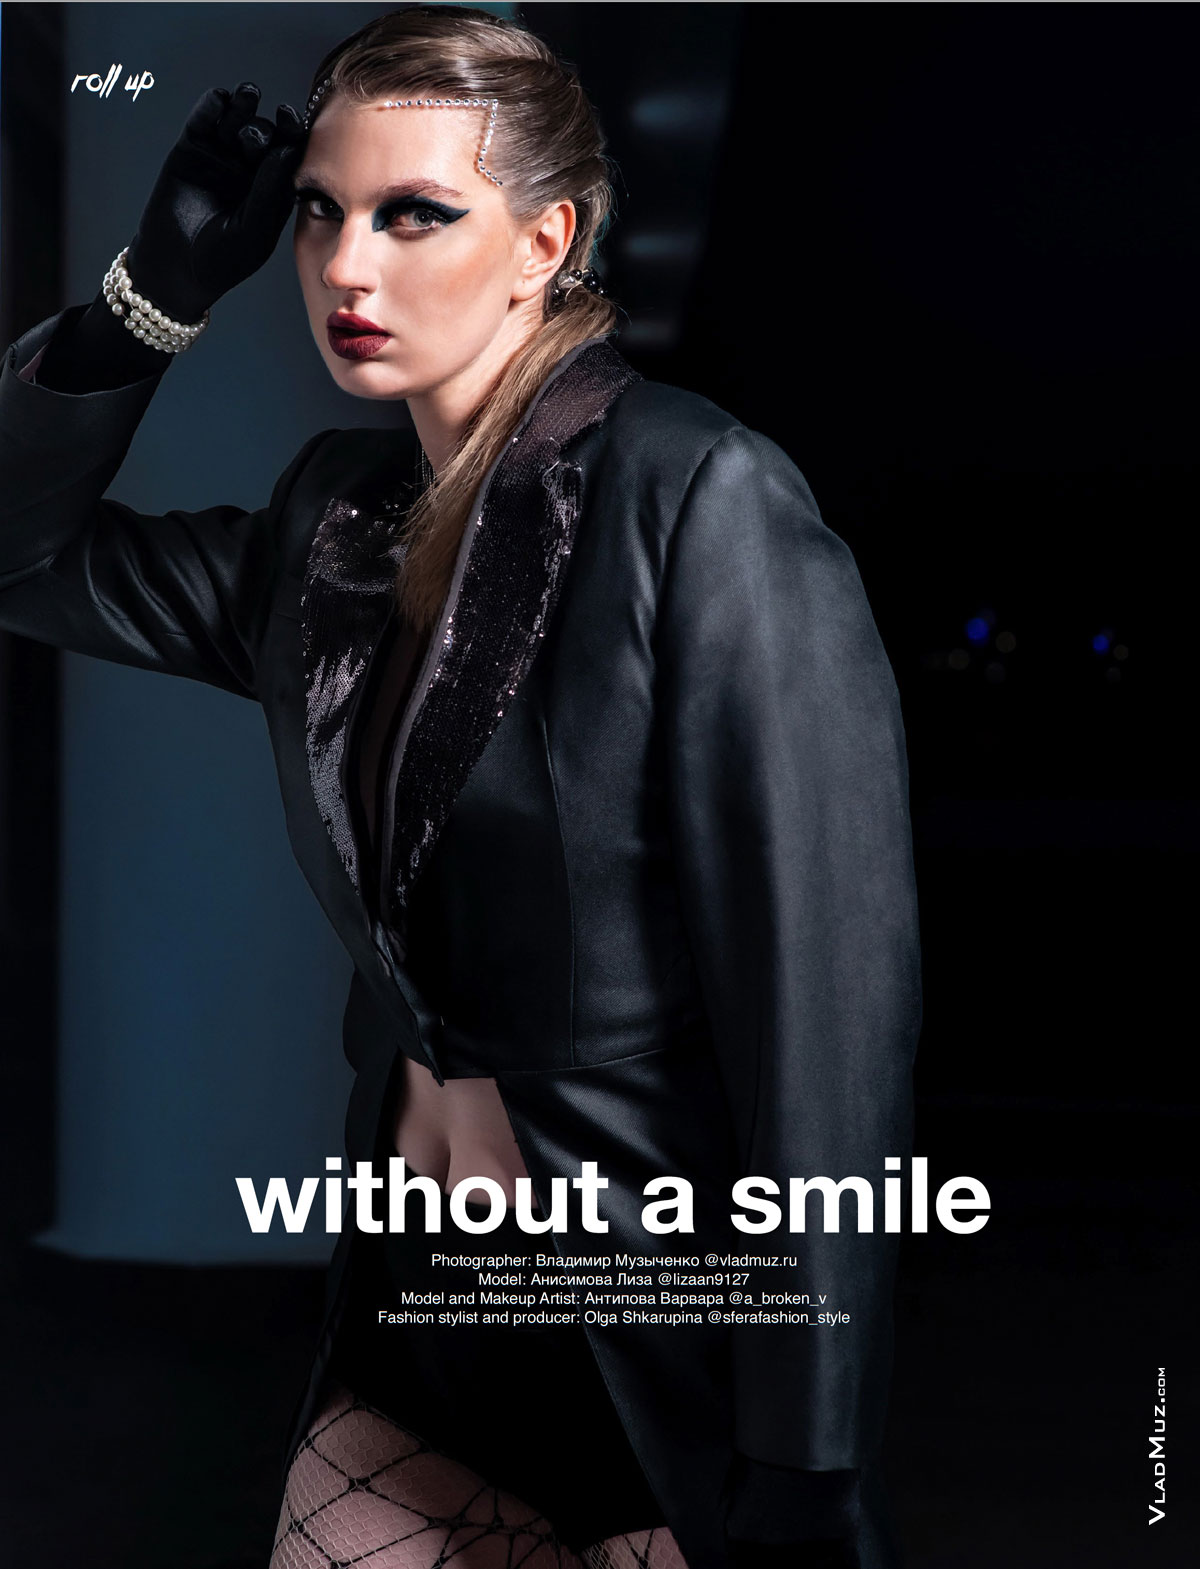 Фото девушки-модели в начале модной серии фотографий в журнале Roll Up Magazine под заголовком “without a smile” — «без улыбки»